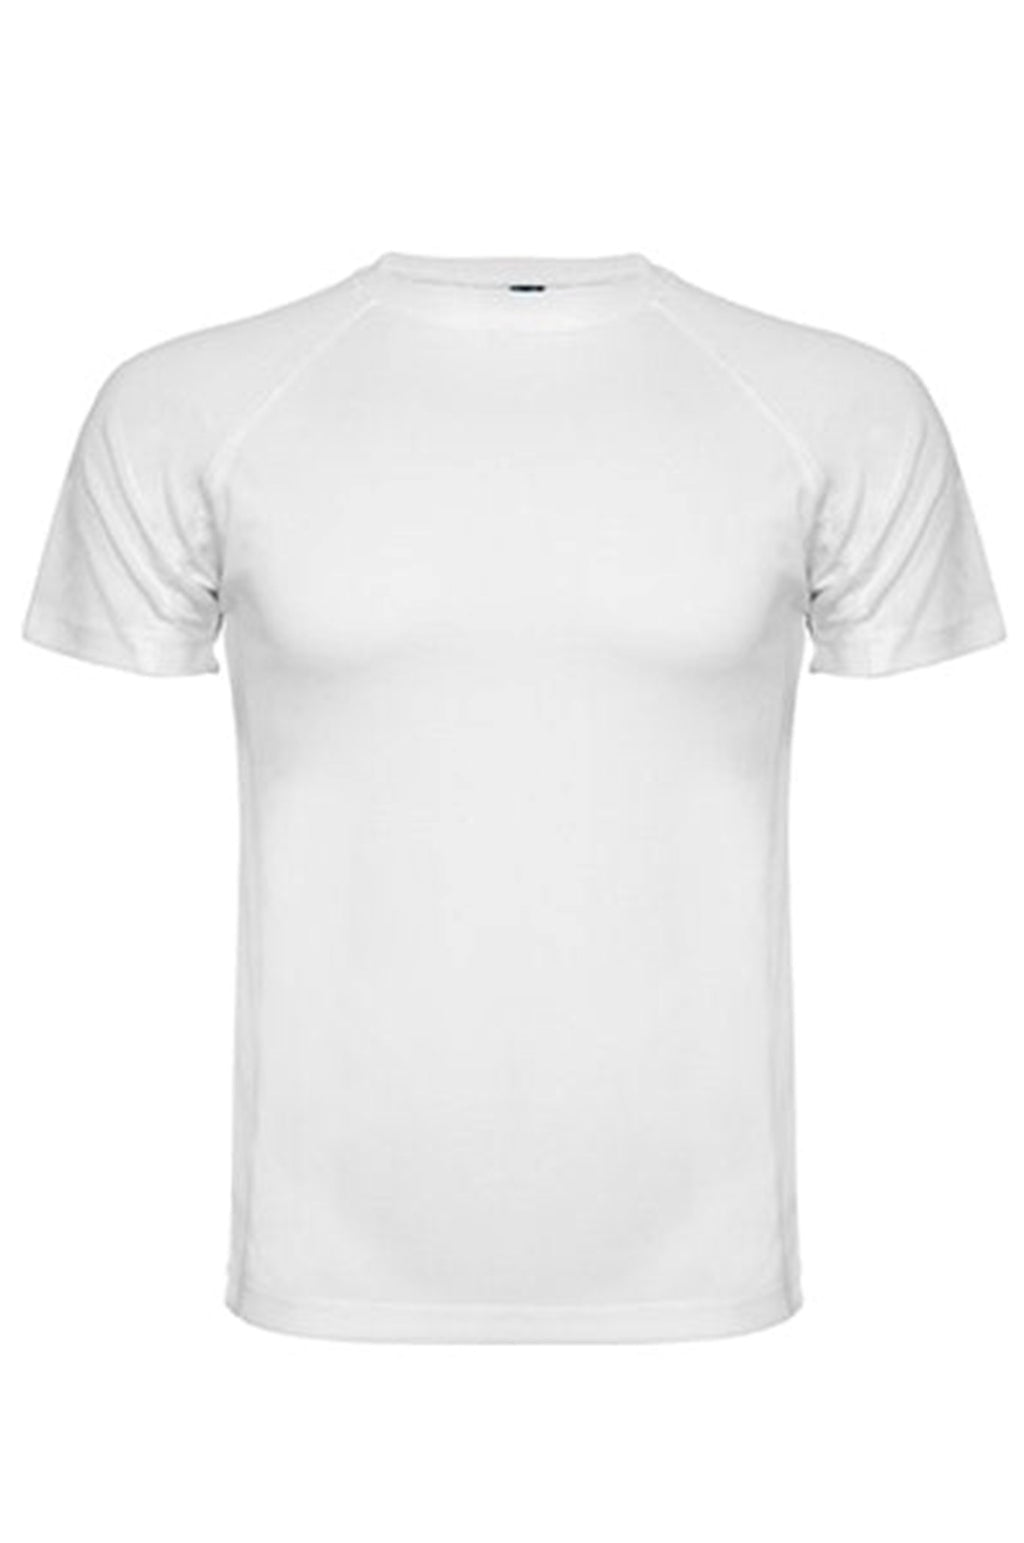 Training T-shirt - White